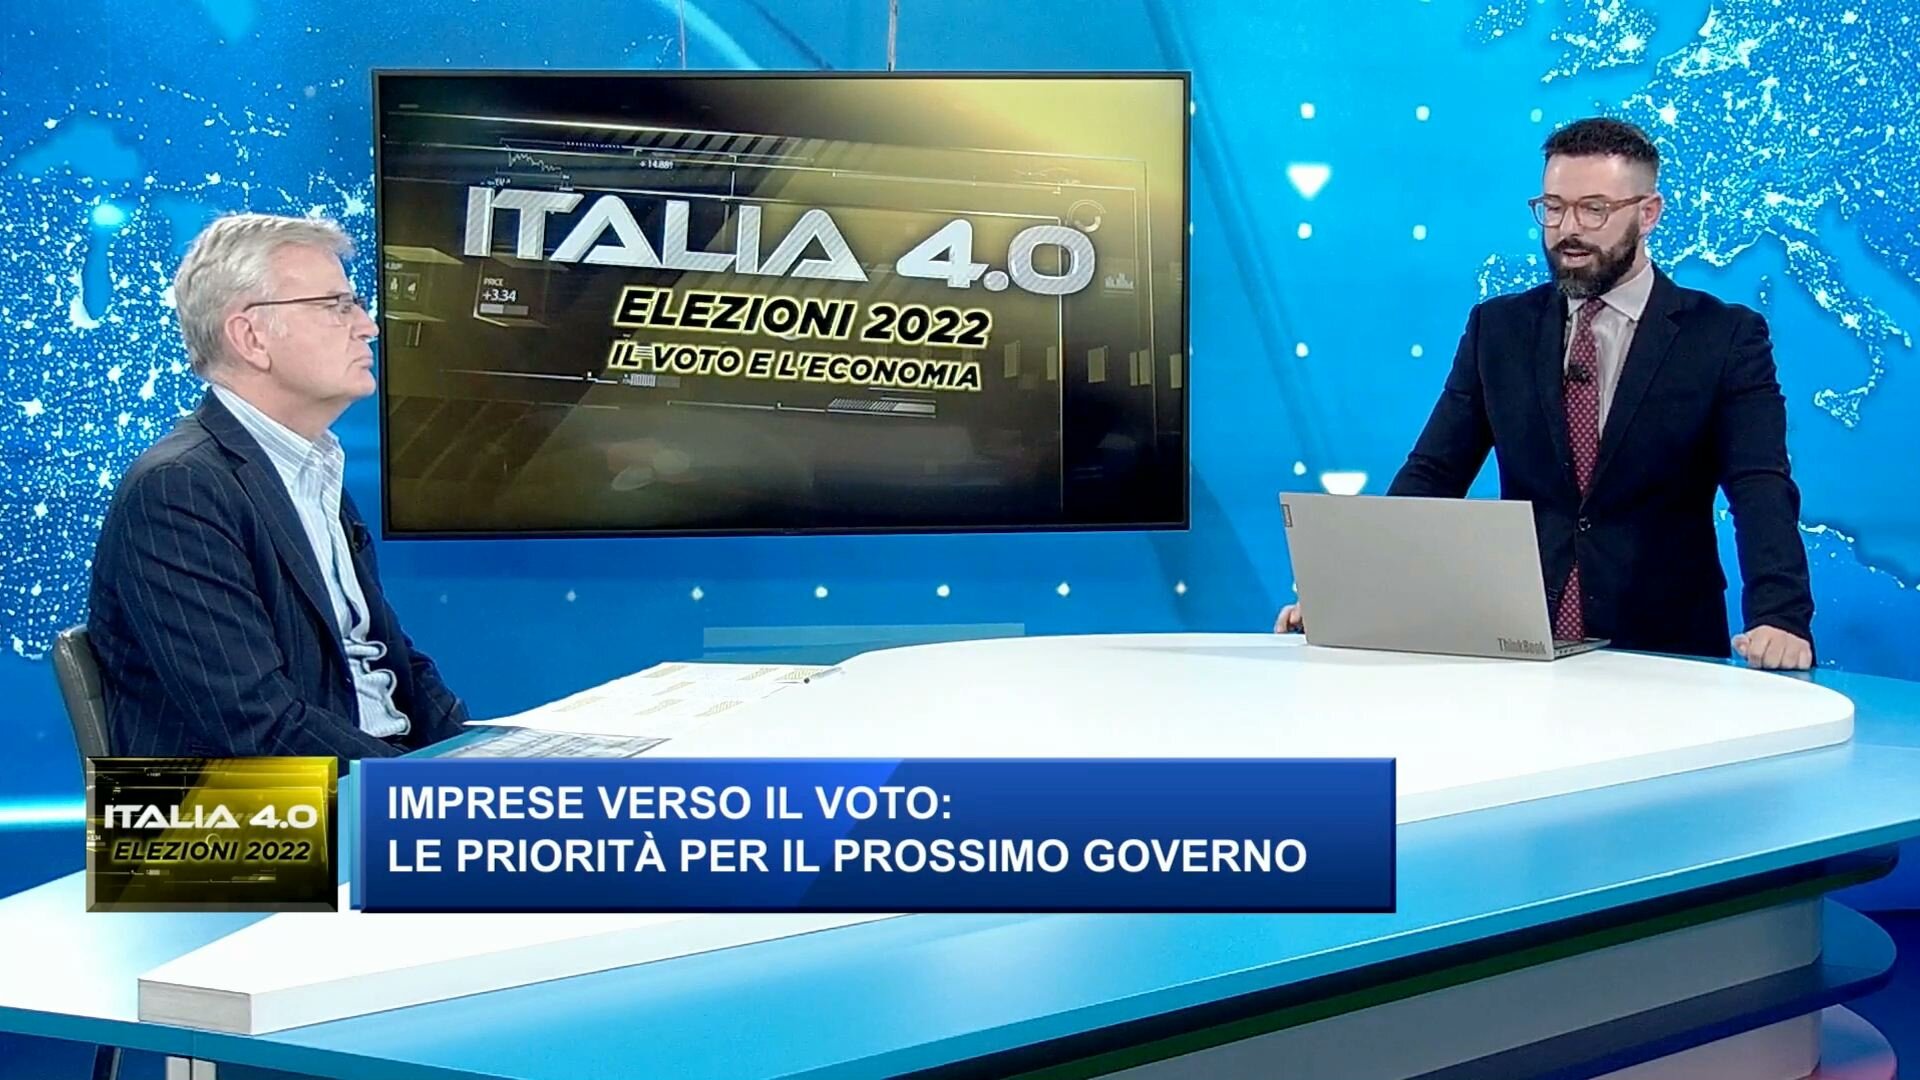 Italia 4.0 elezioni 2022 - Industriali a pochi giorni dal voto: tra tenuta ordini e paura recessione